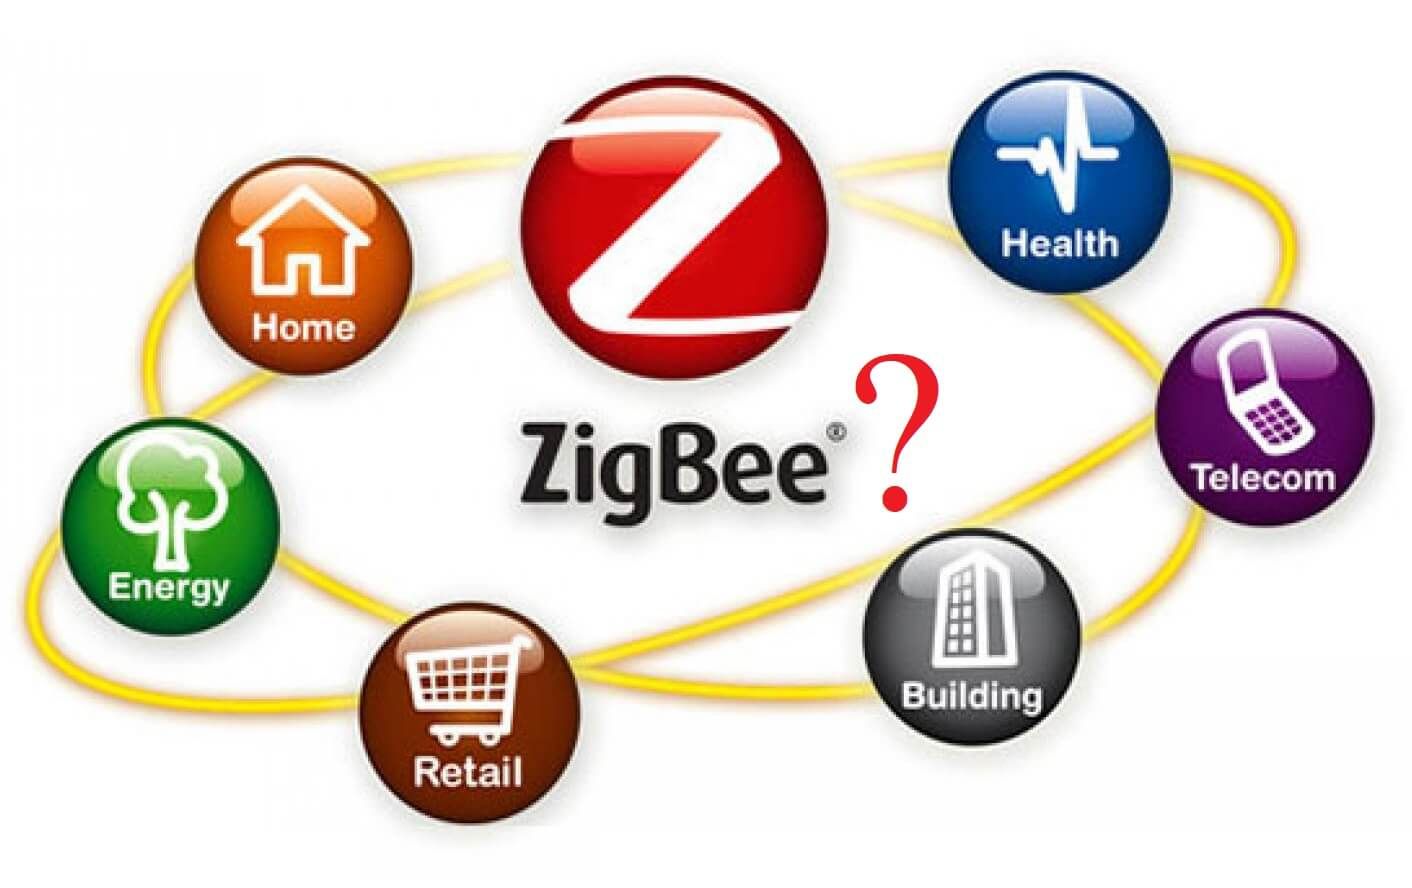 What is Zigbee?